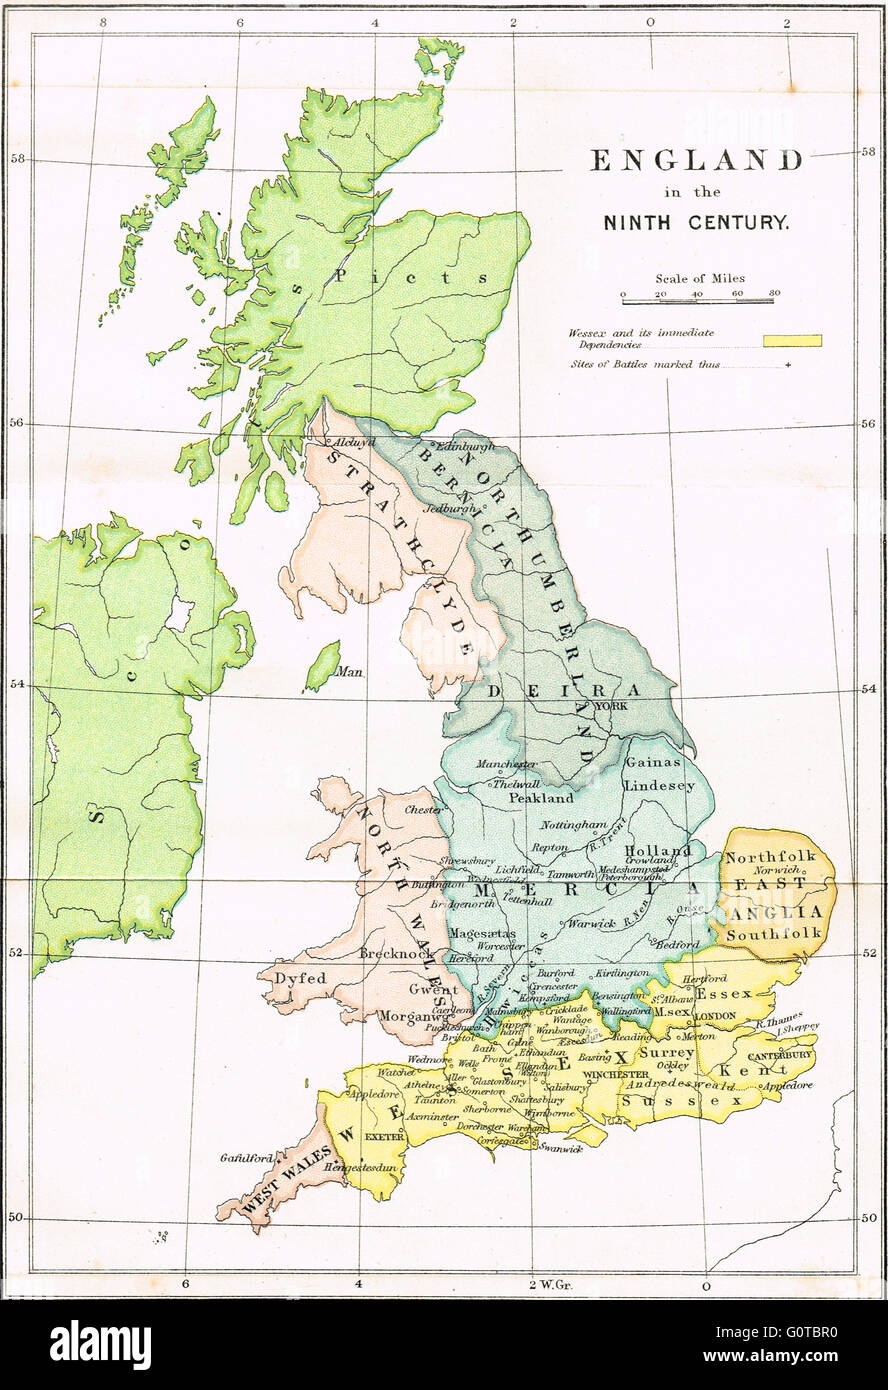 Site de l'Angleterre dans le neuvième siècle montrant les royaumes anglo-saxons Banque D'Images